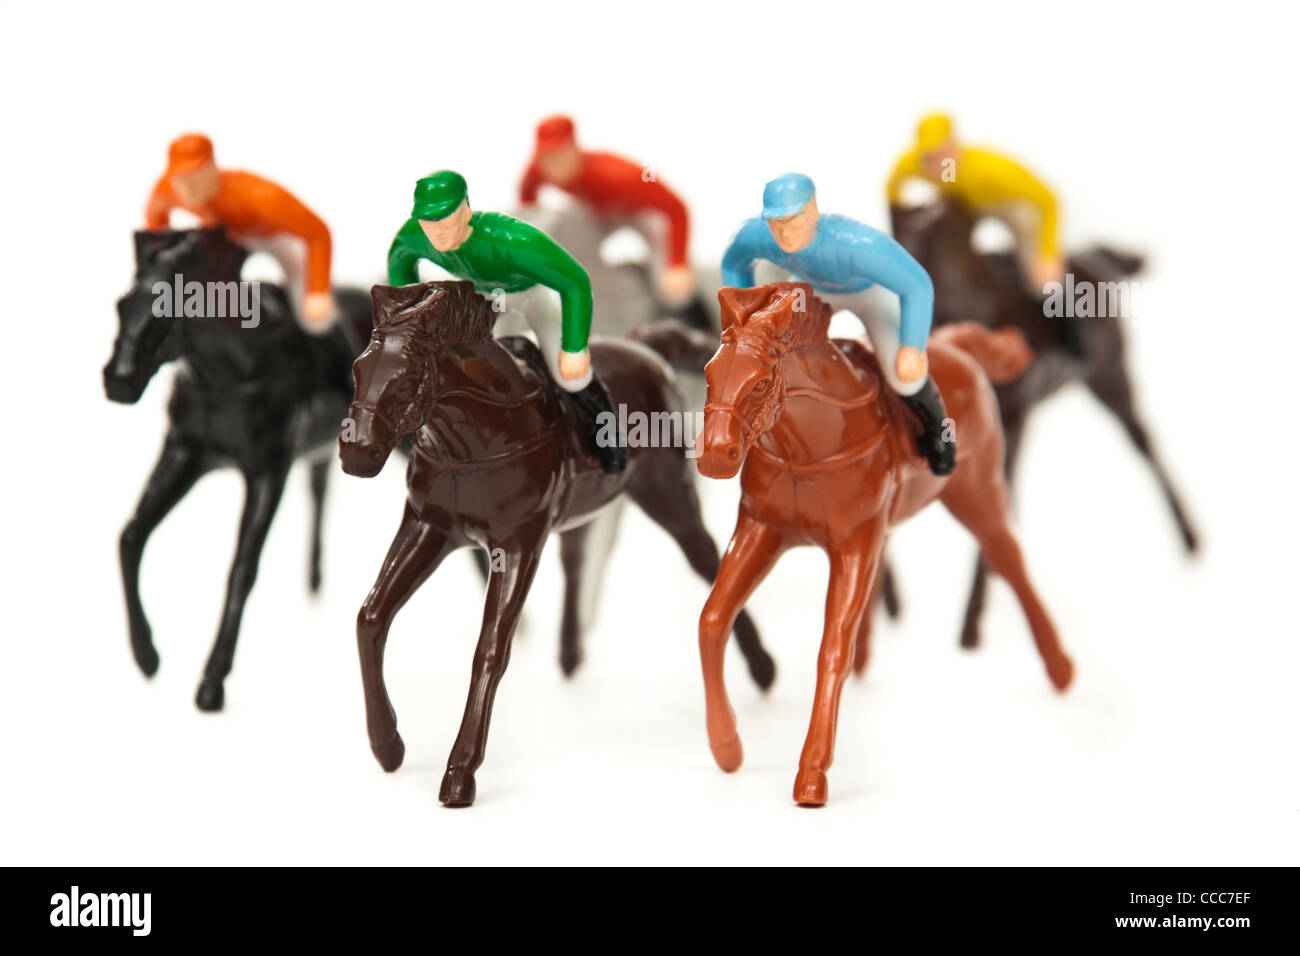 Escalado horse racing board game Stock Photo